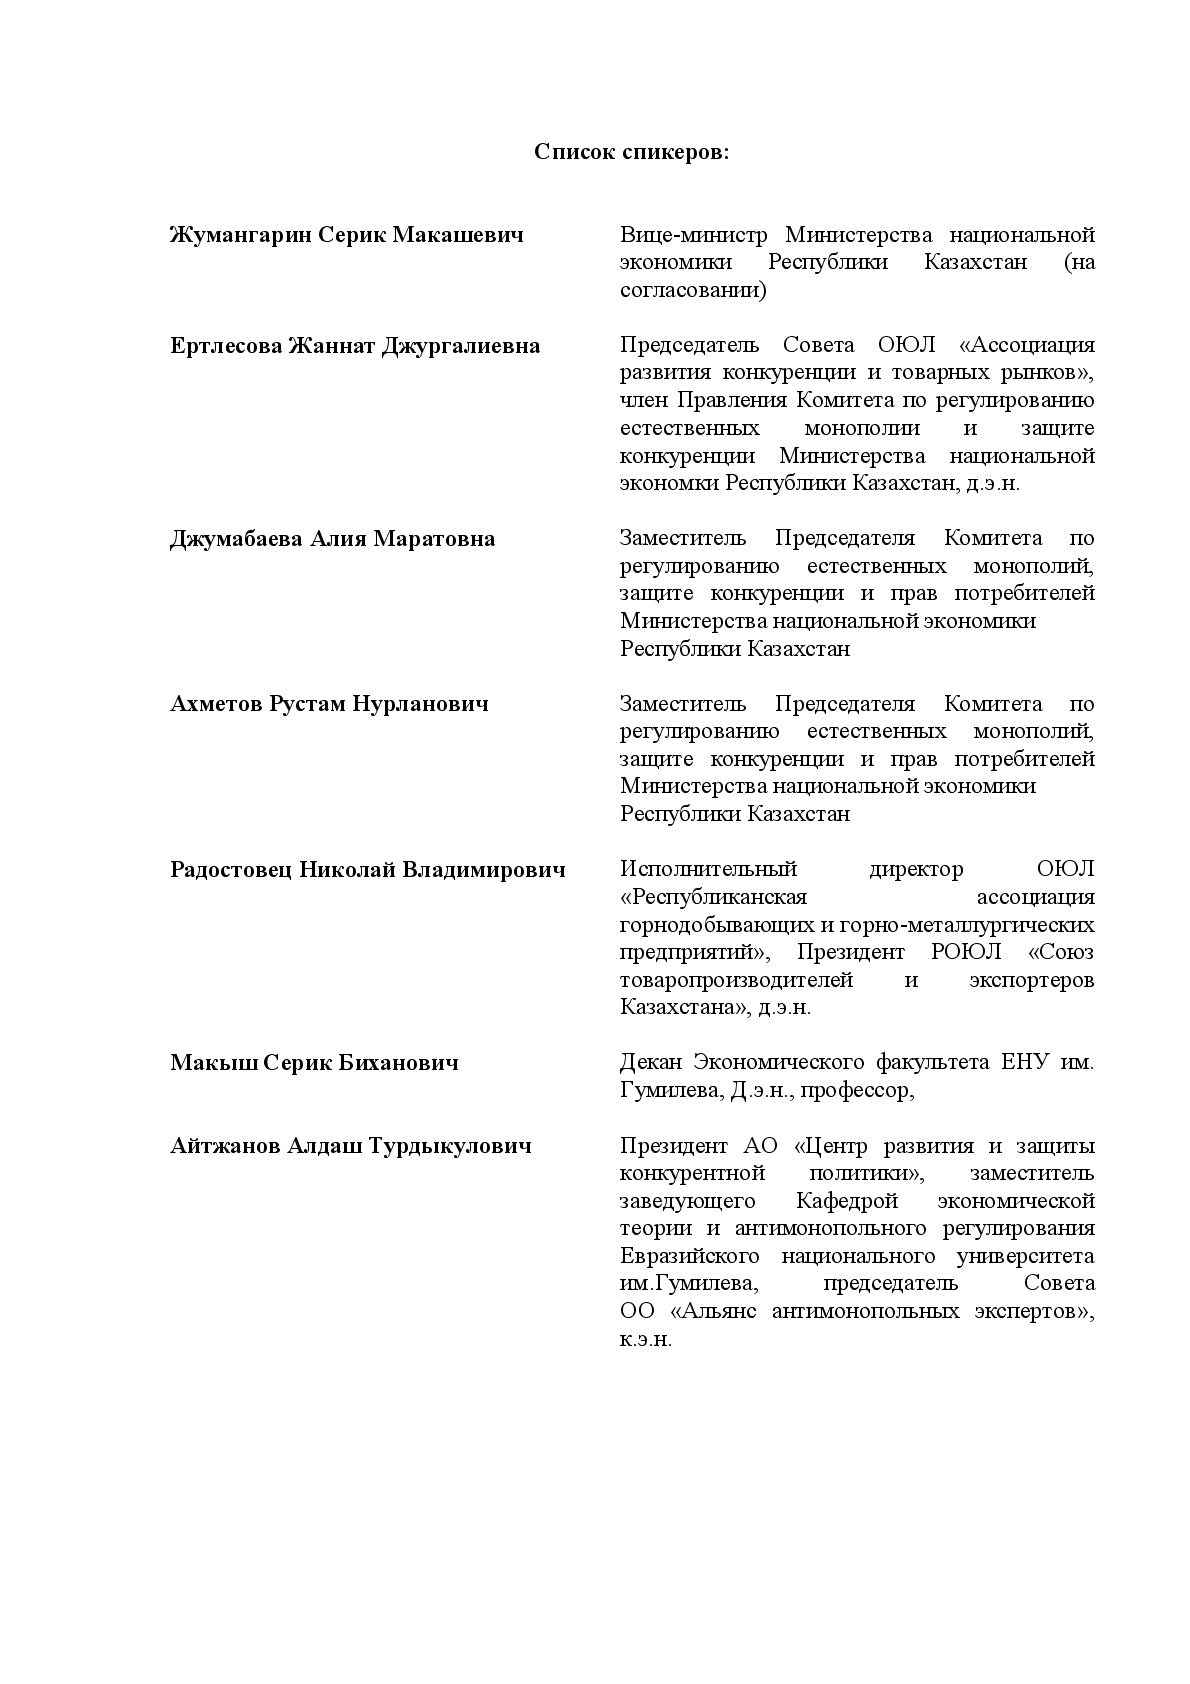 ПРОГРАММА круглого стола на тему:  «Антимонопольное регулирование в Республике Казахстан на современном этапе» 6 июня 2017 года в г.Астана